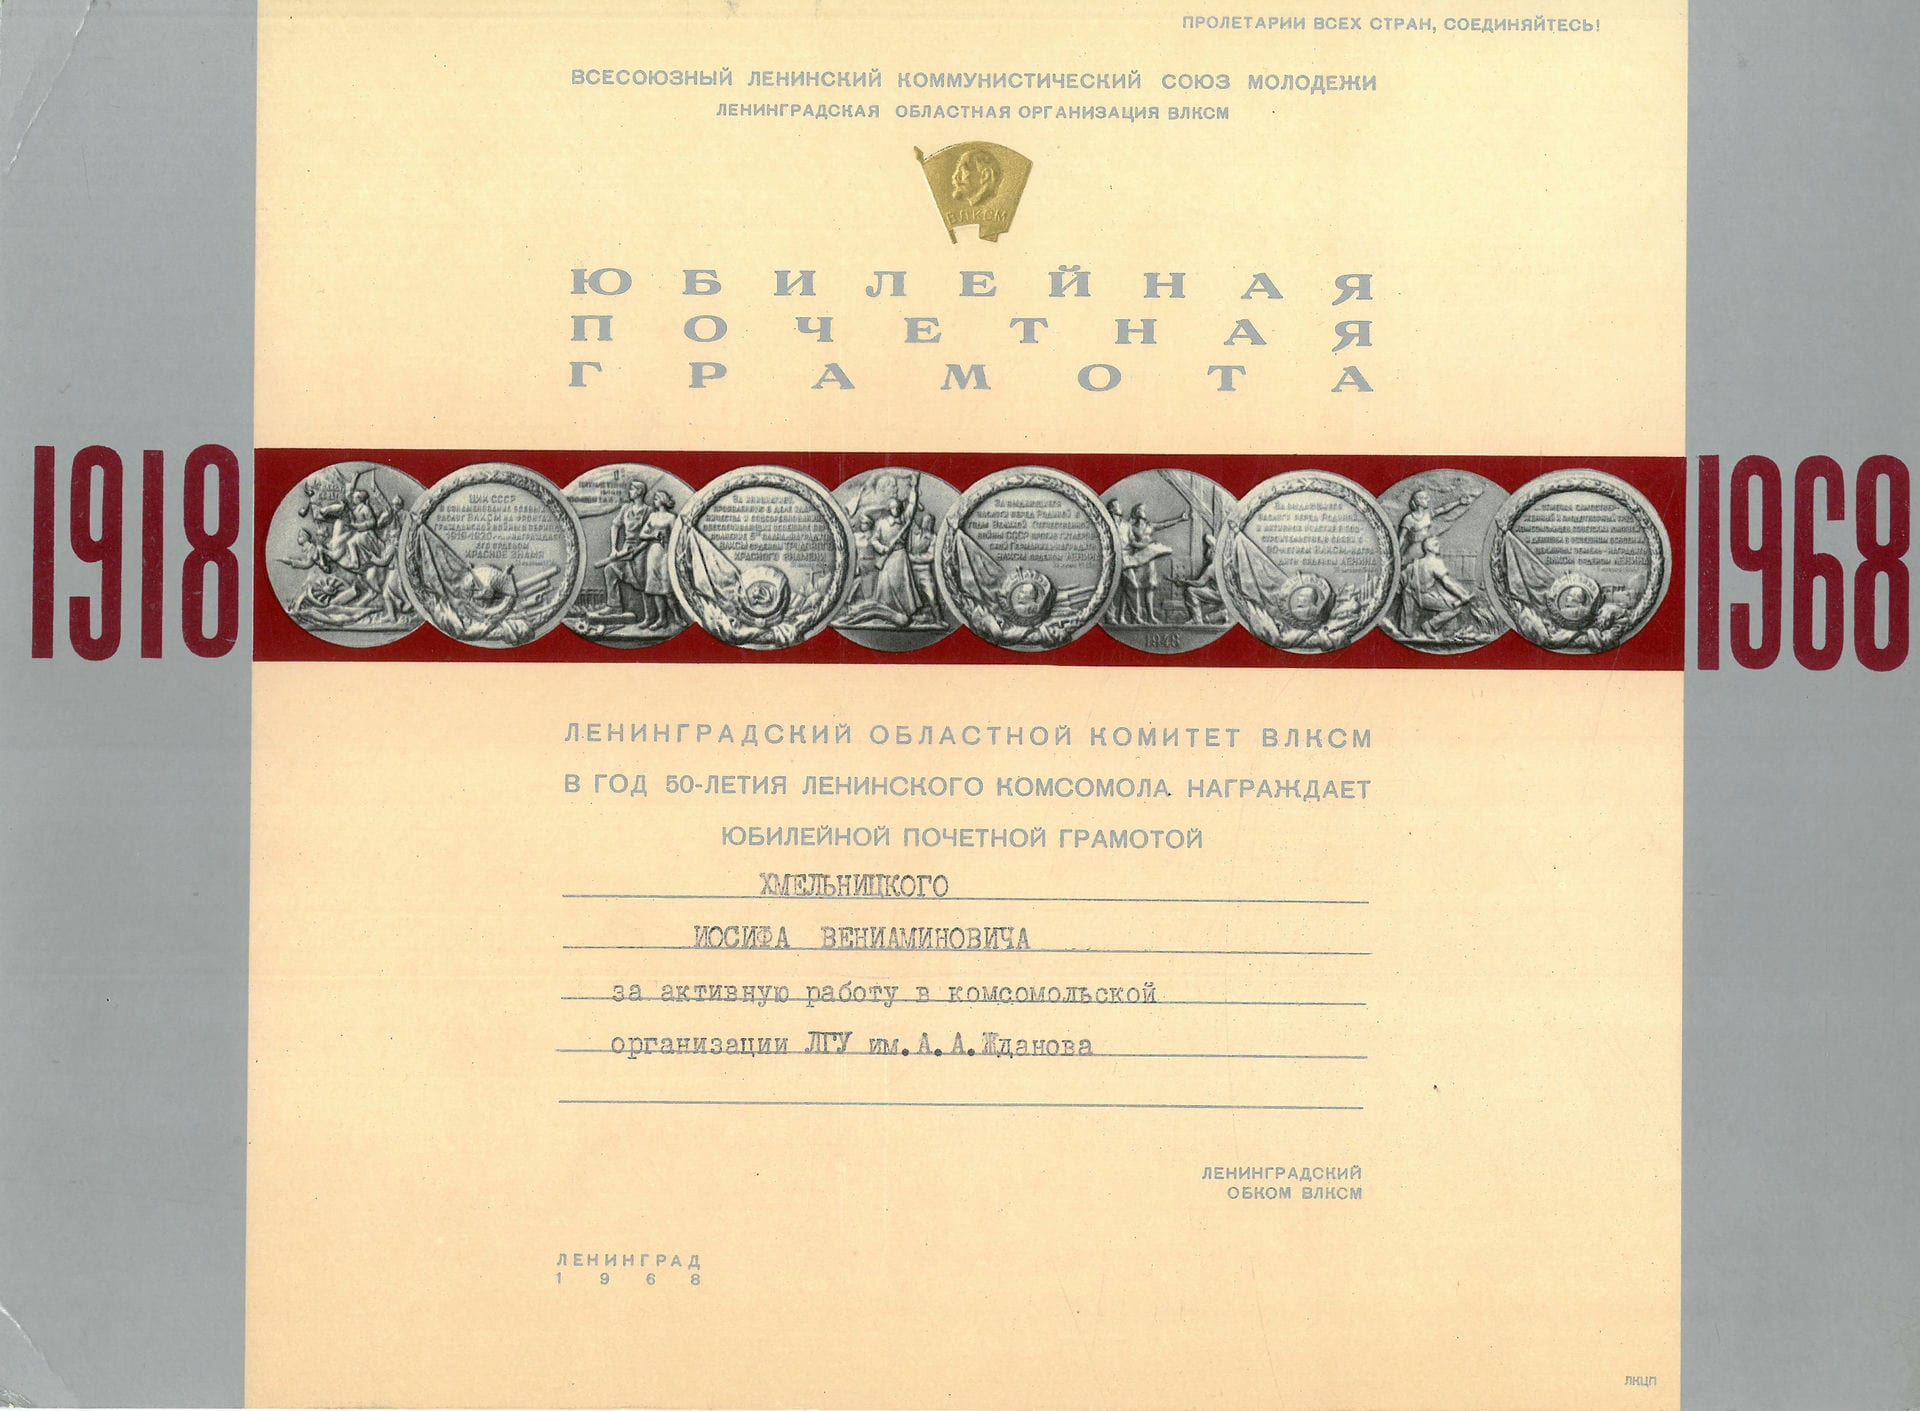 Экспонат #95. Юбилейная почетная грамота Ленинградского областного комитета ВЛКСМ. 1968 года